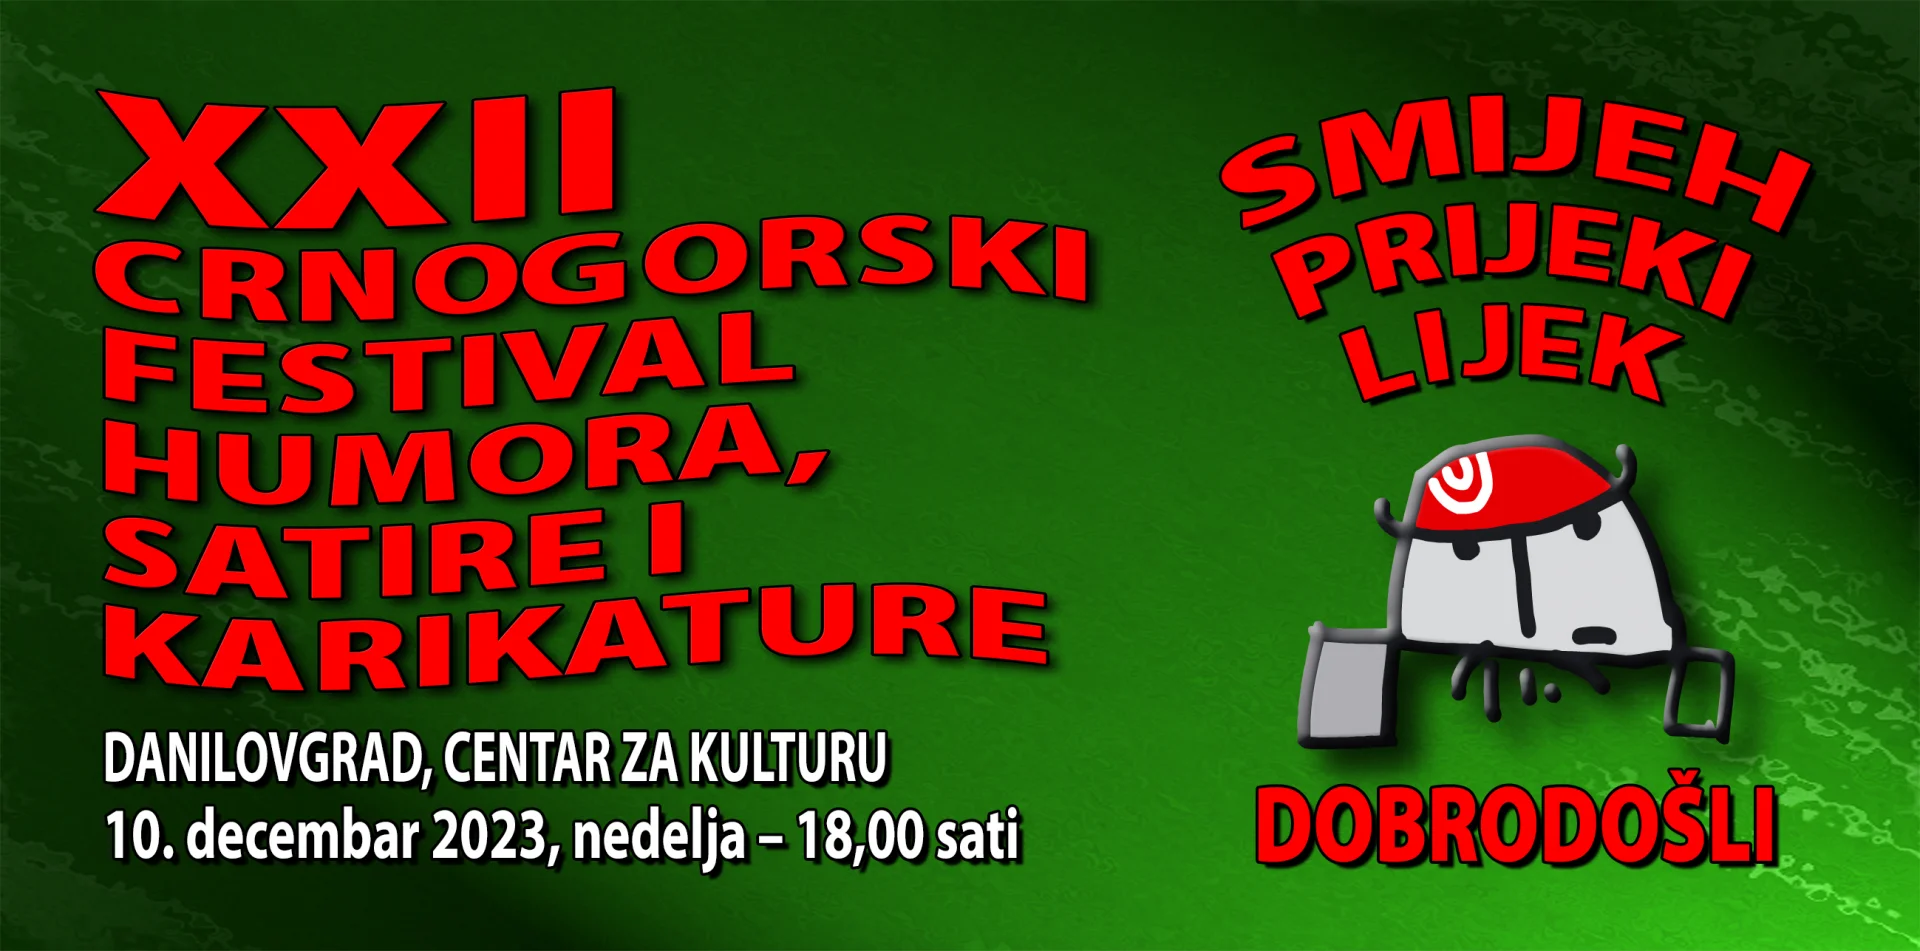 U neđelju 12. crnogorski festival, humora, satire i karikature u Danilovgradu